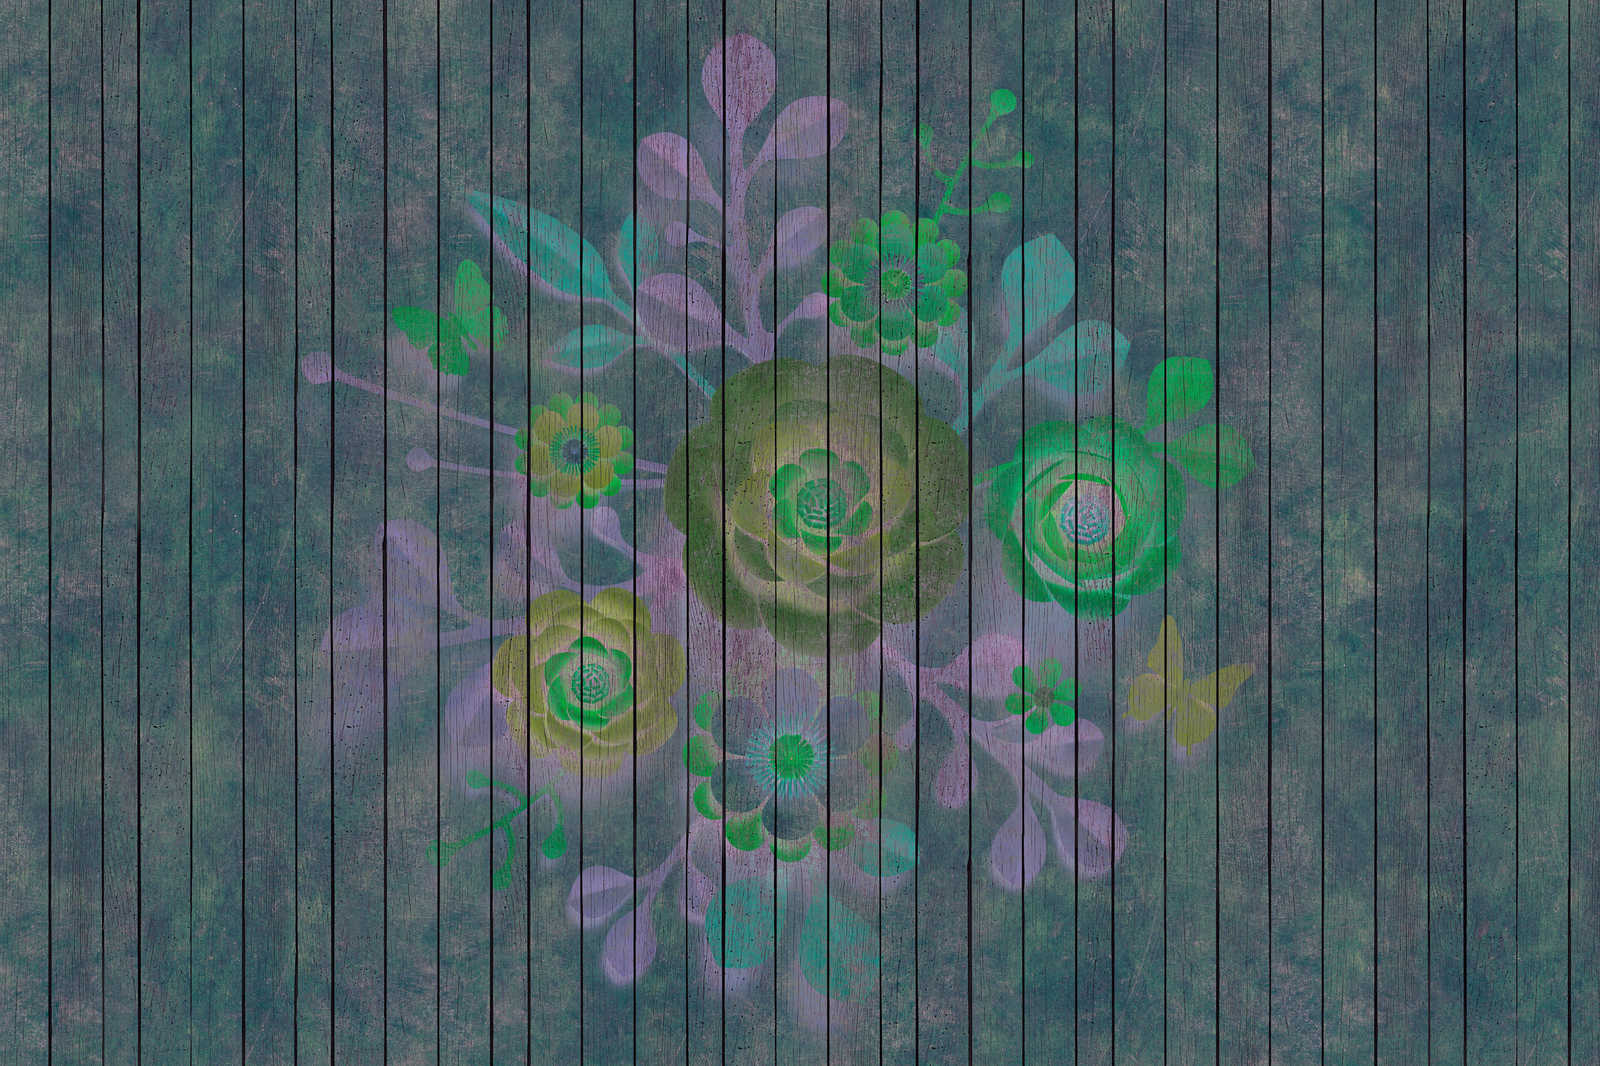             Spray bouquet 2 - toile en panneau de bois structure avec fleurs sur panneau - 0,90 m x 0,60 m
        